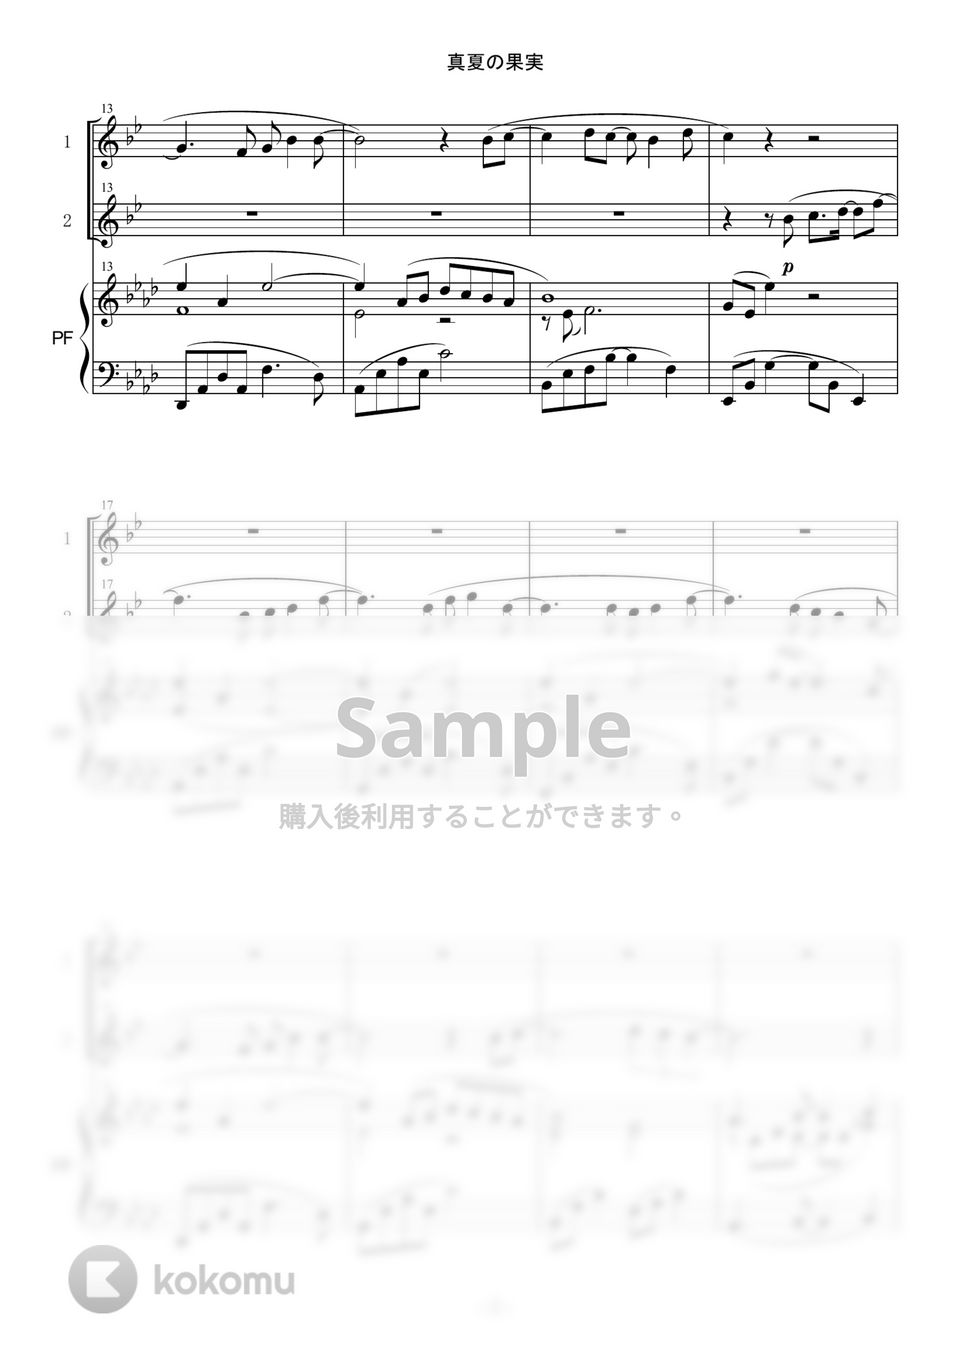 サザンオールスターズ - 真夏の果実 (in B♭/デュオ/B♭クラリネット/ピアノ伴奏) by enorisa